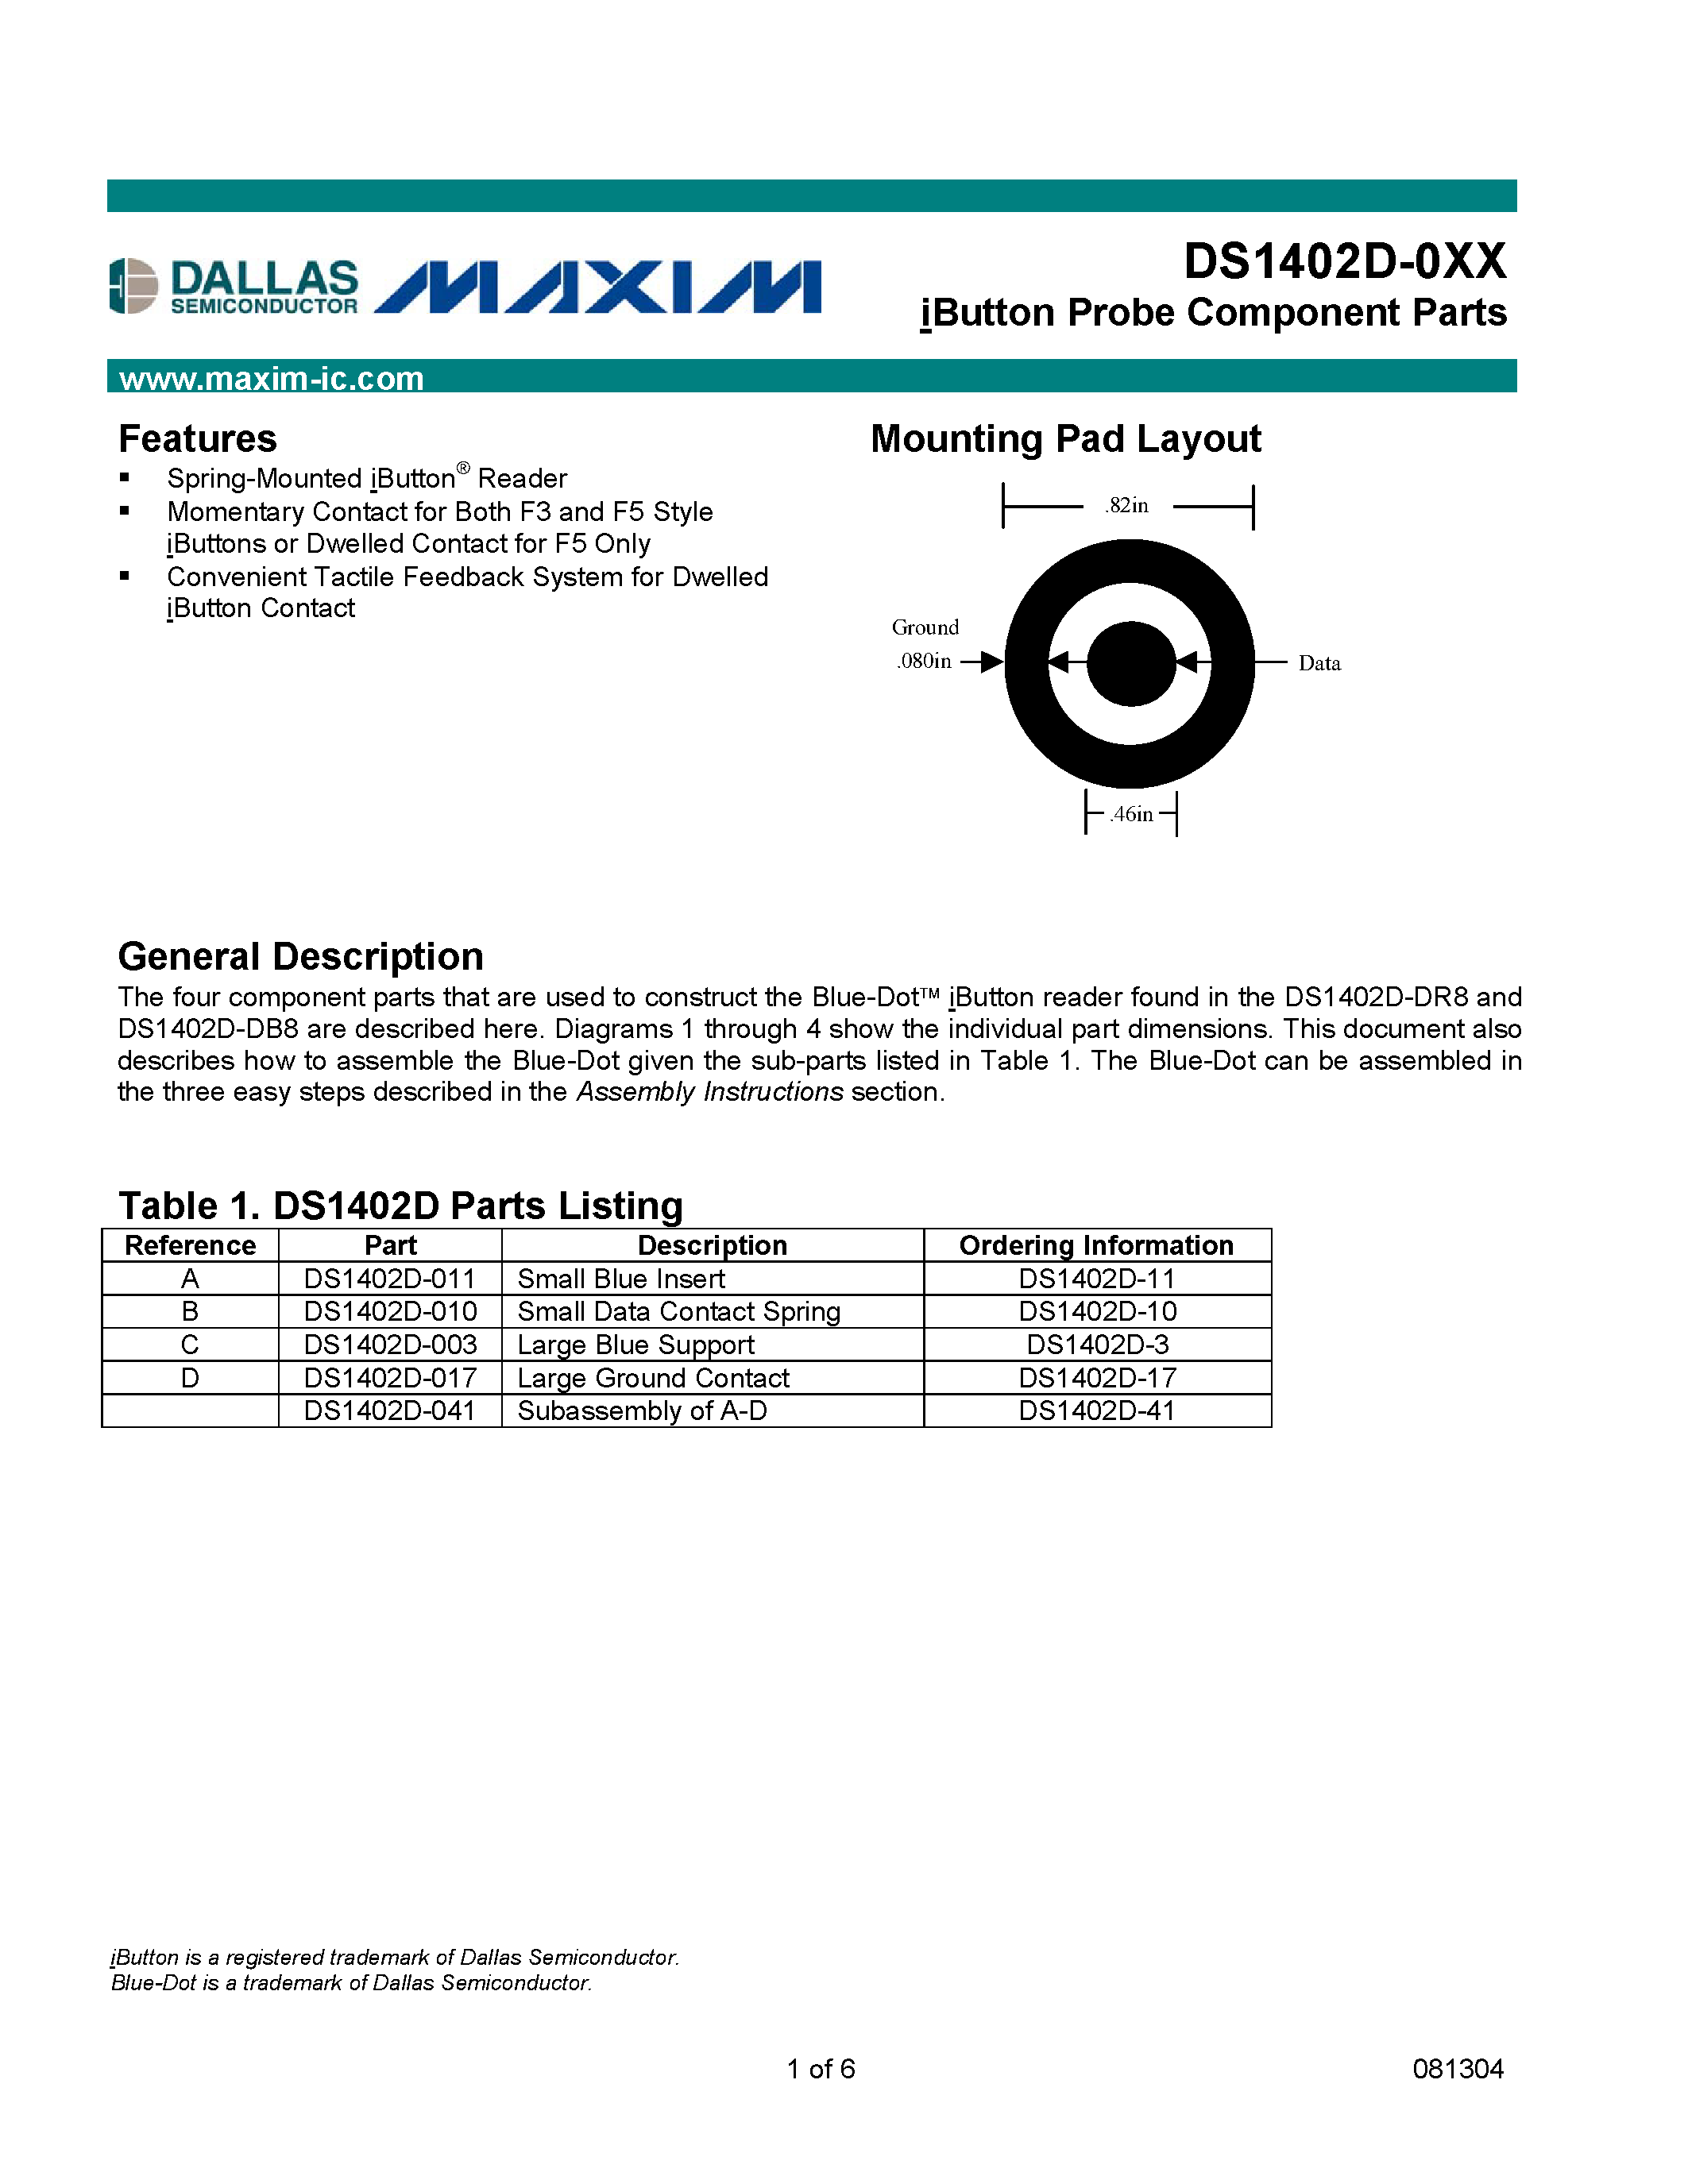 Даташит DS1402D-003 - iButton Probe Component Parts страница 1